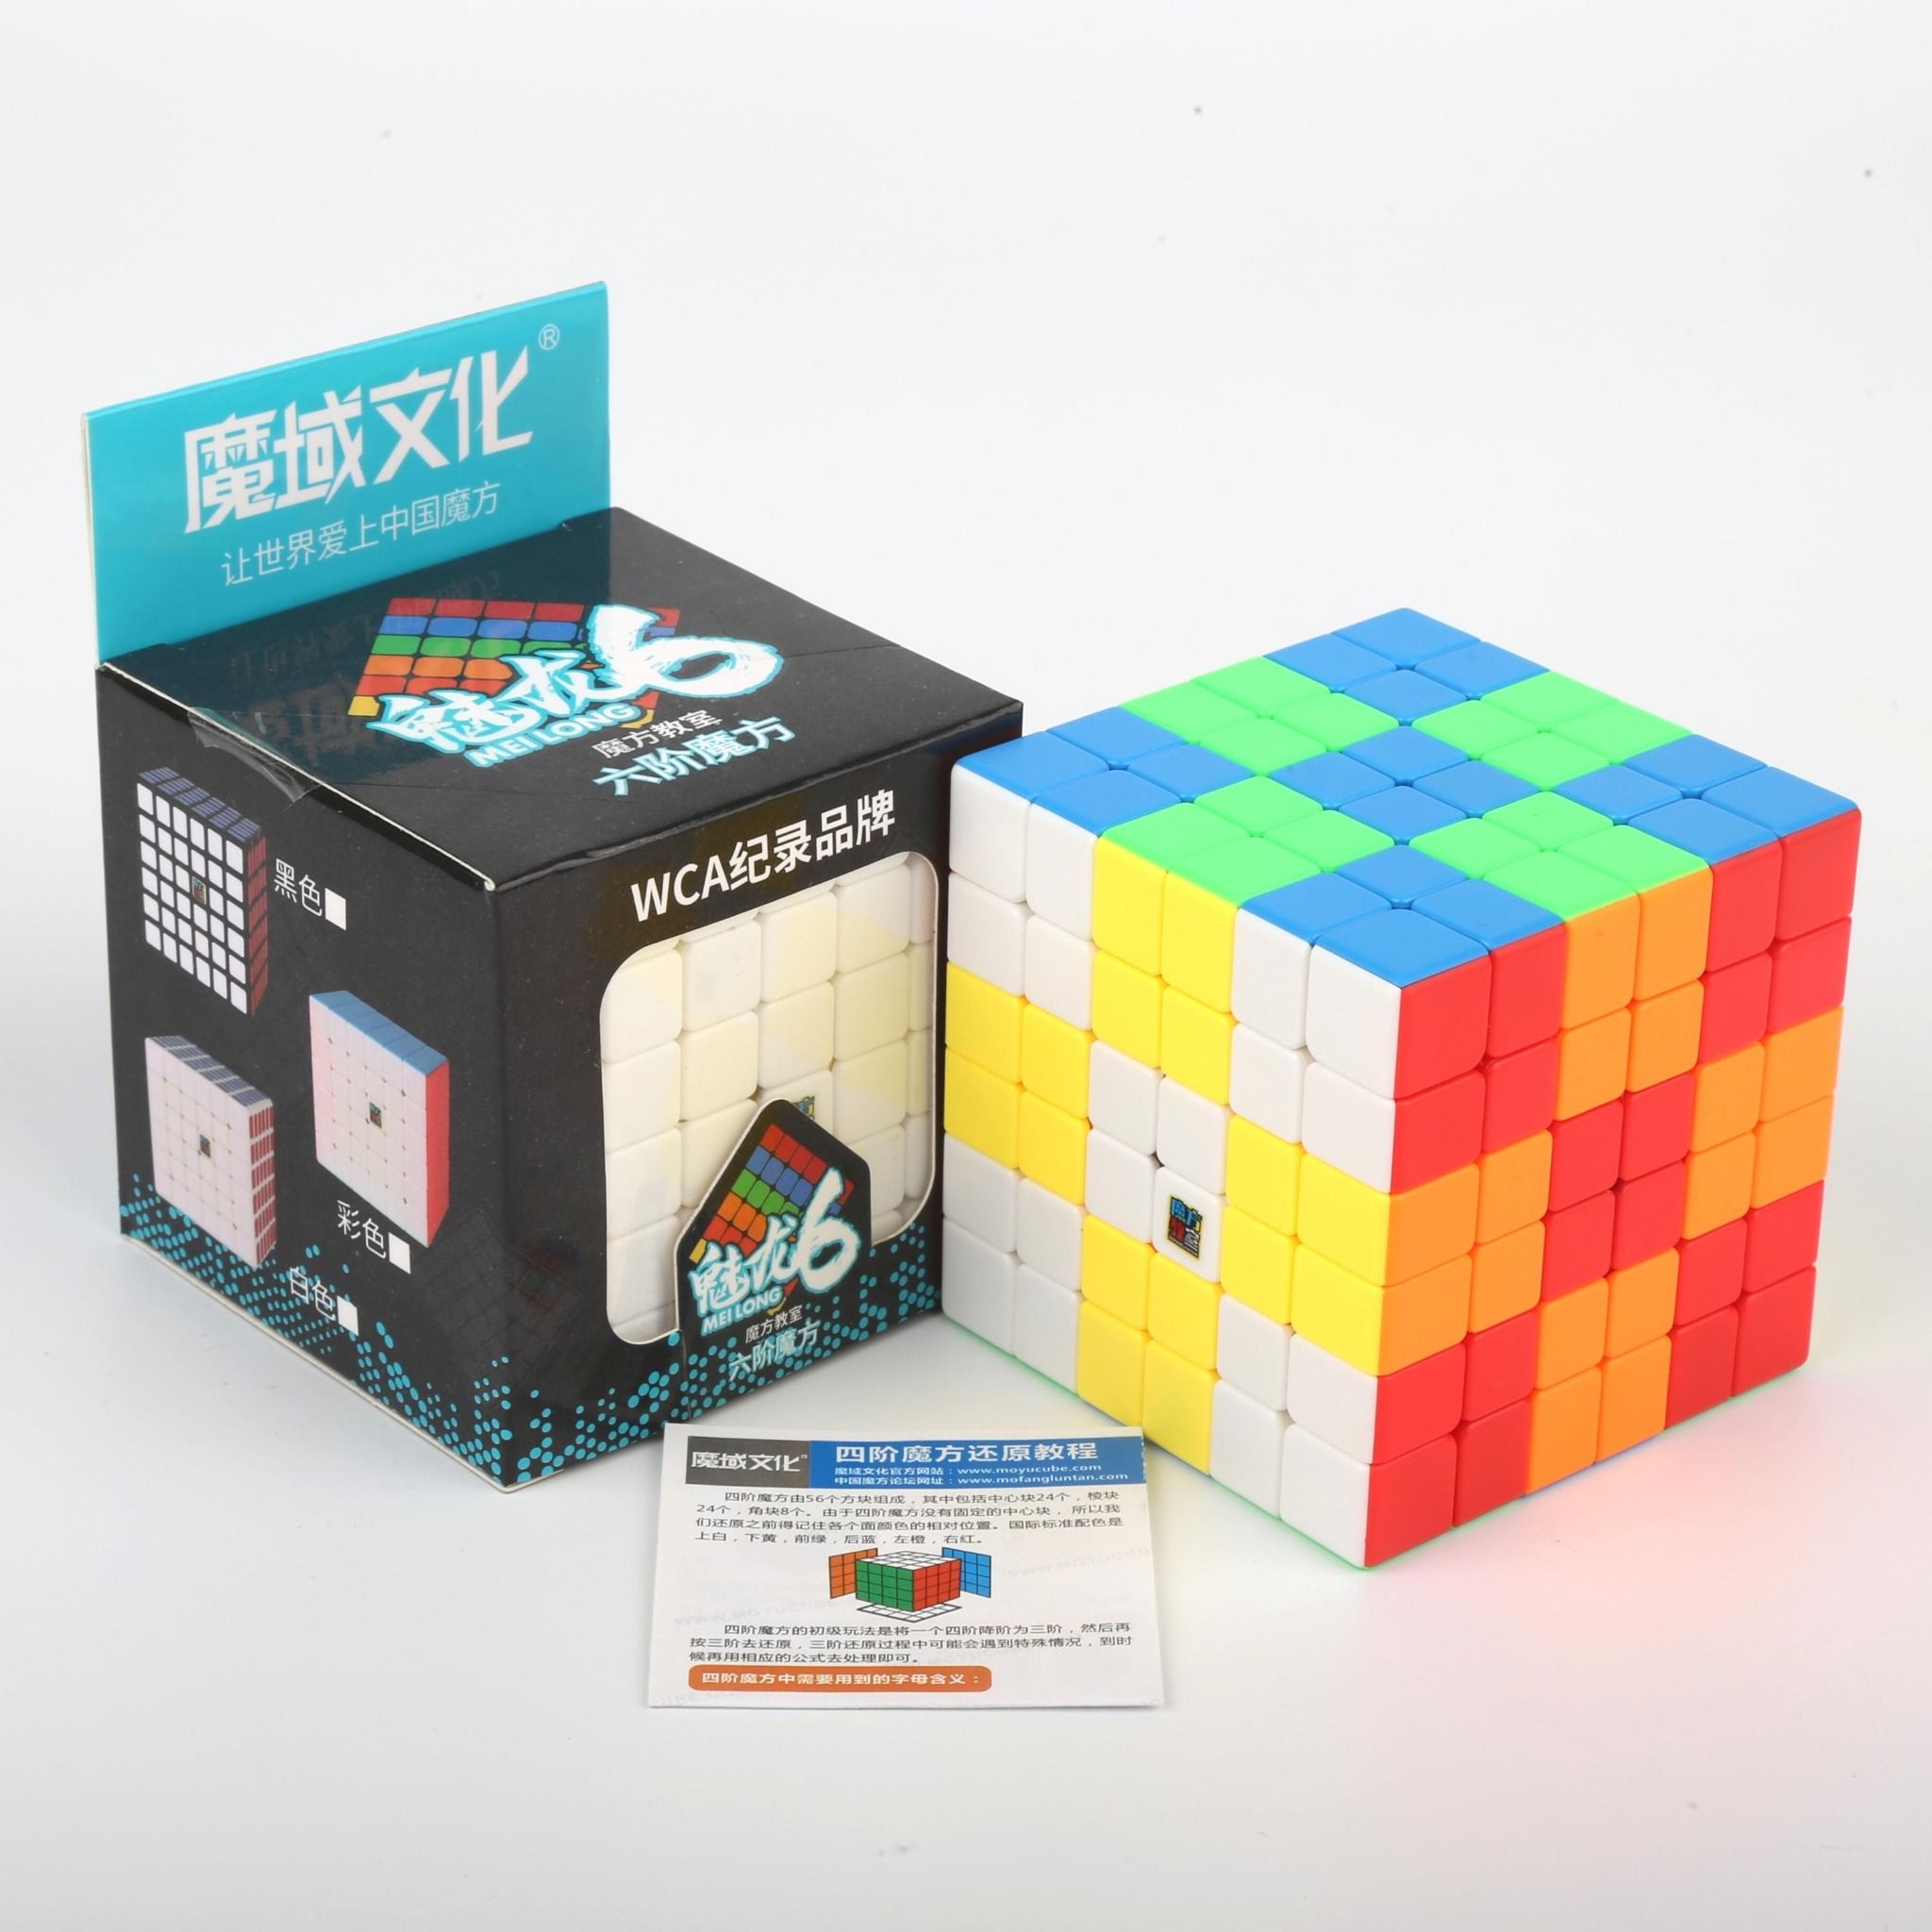  Rubik Meilong 6x6 - Đồ Chơi Trí Tuệ - Khối Lập Phương 6 Tầng Stickerless - Zyo Rubik 